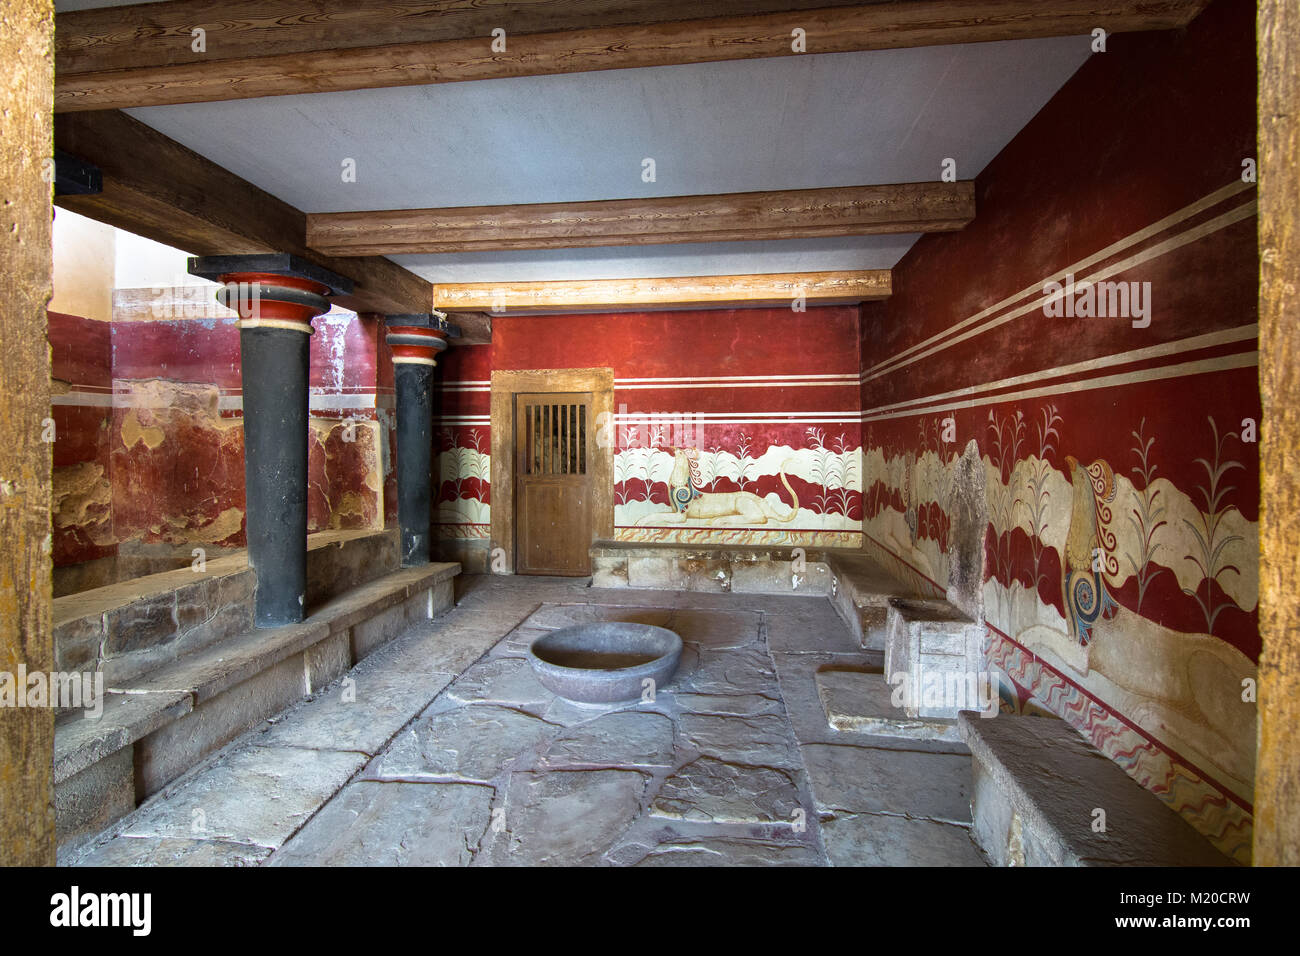 La salle de trône, au palais de Knossos, célèbre ancienne ville de Crète, situé près de la ville d'Héraklion moderne Banque D'Images